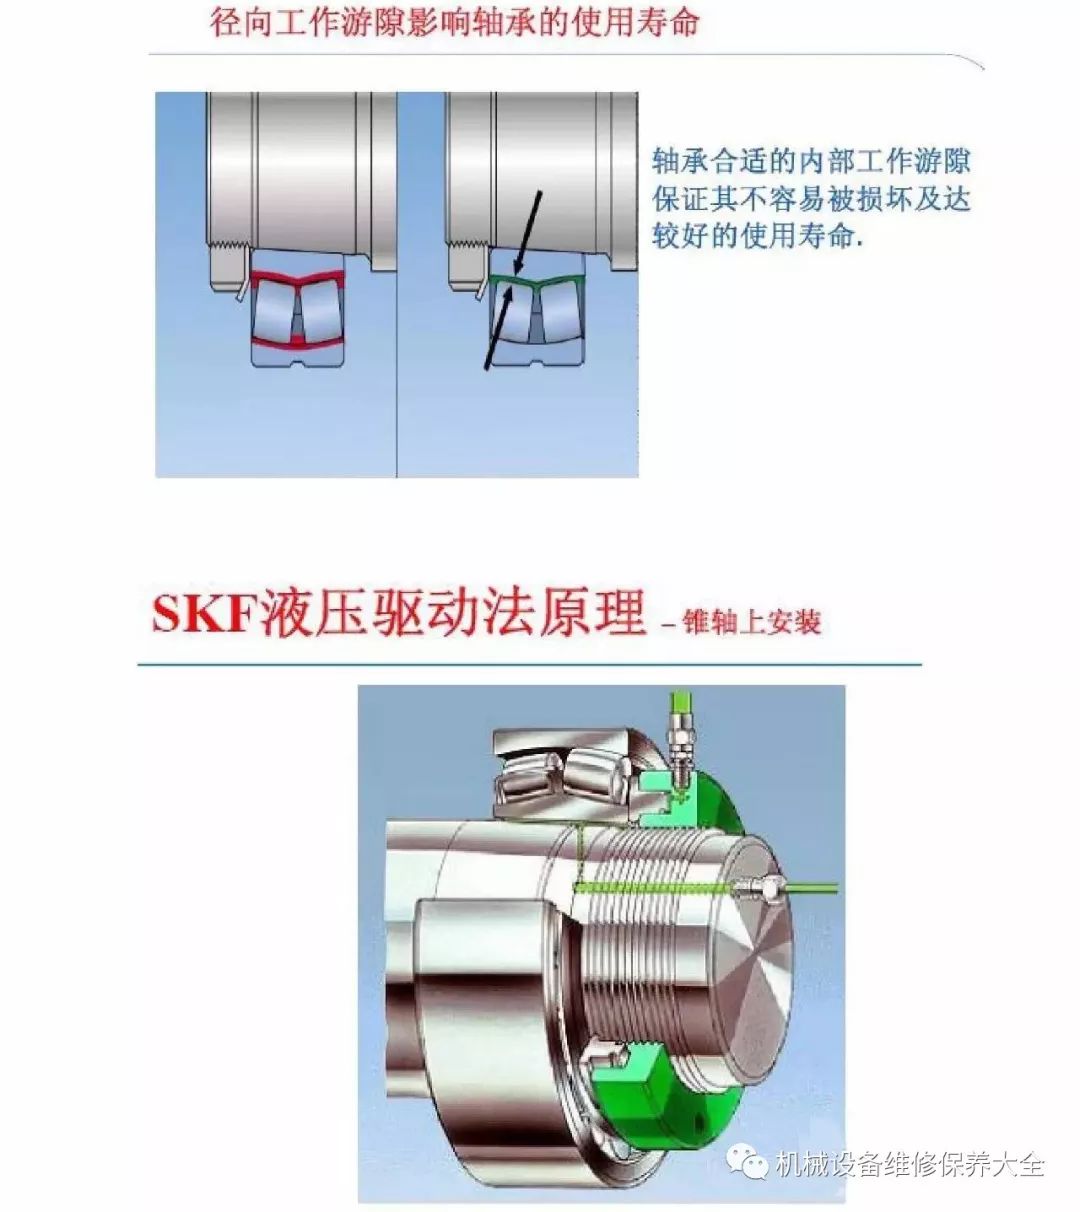 【恒力传动】各类轴承的拆卸与安装步骤详细图示(通用方法),及优缺点